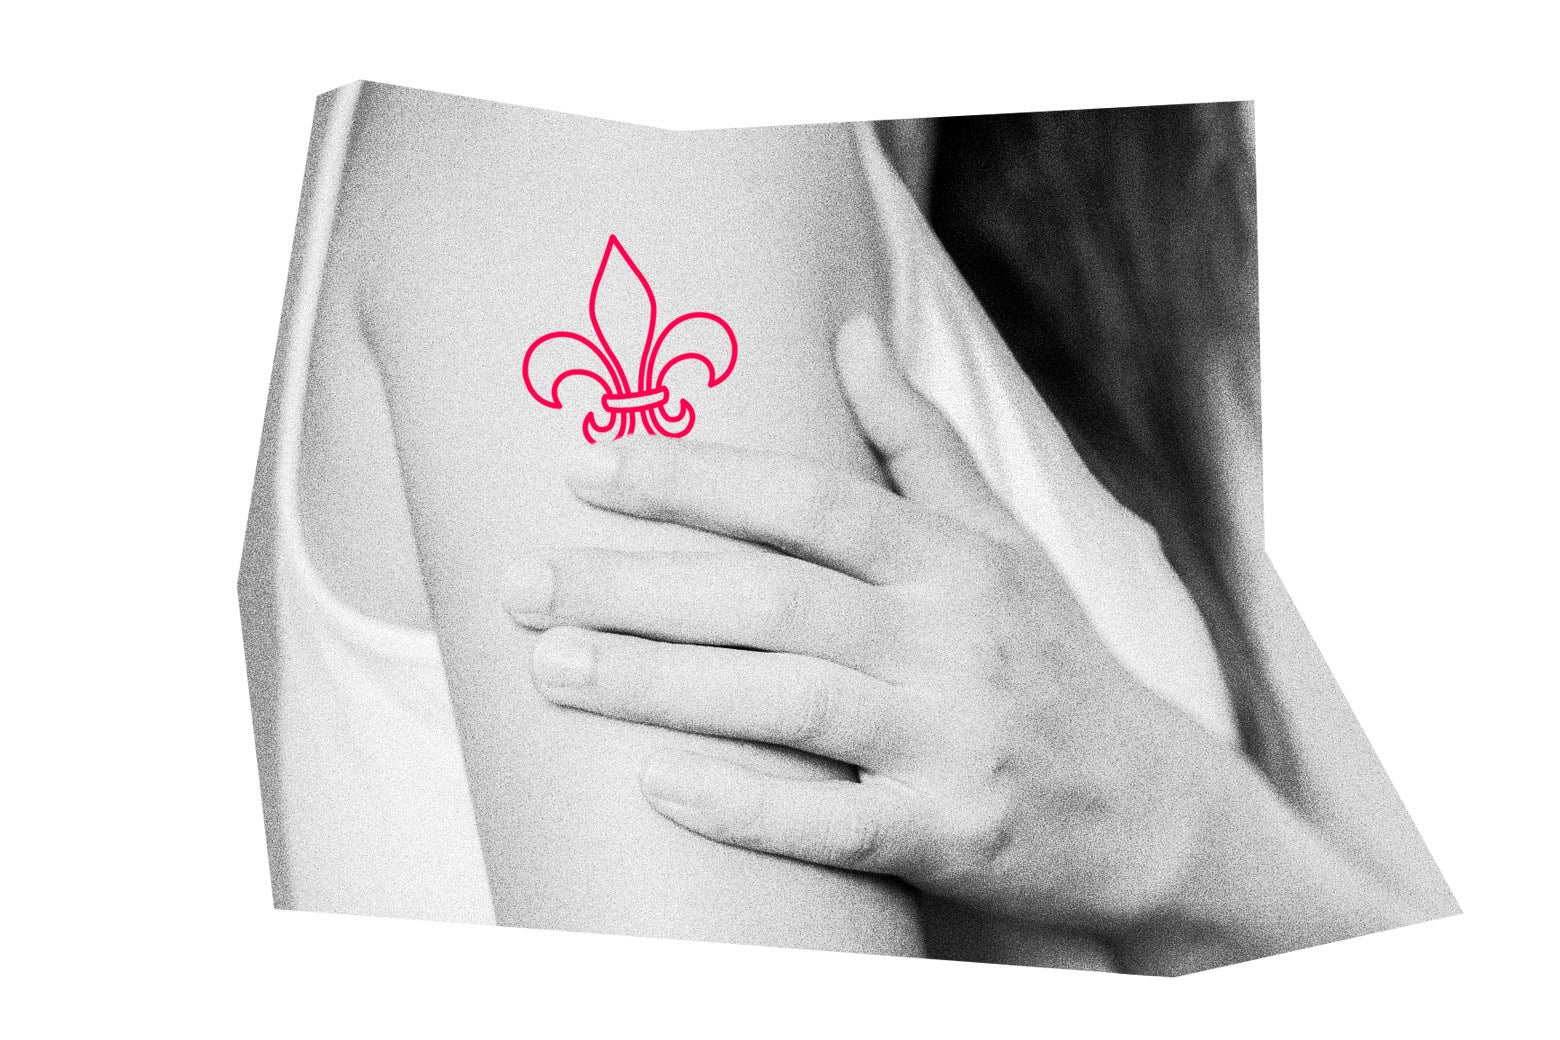 A fleur-de-lys illustrated on a woman's arm.